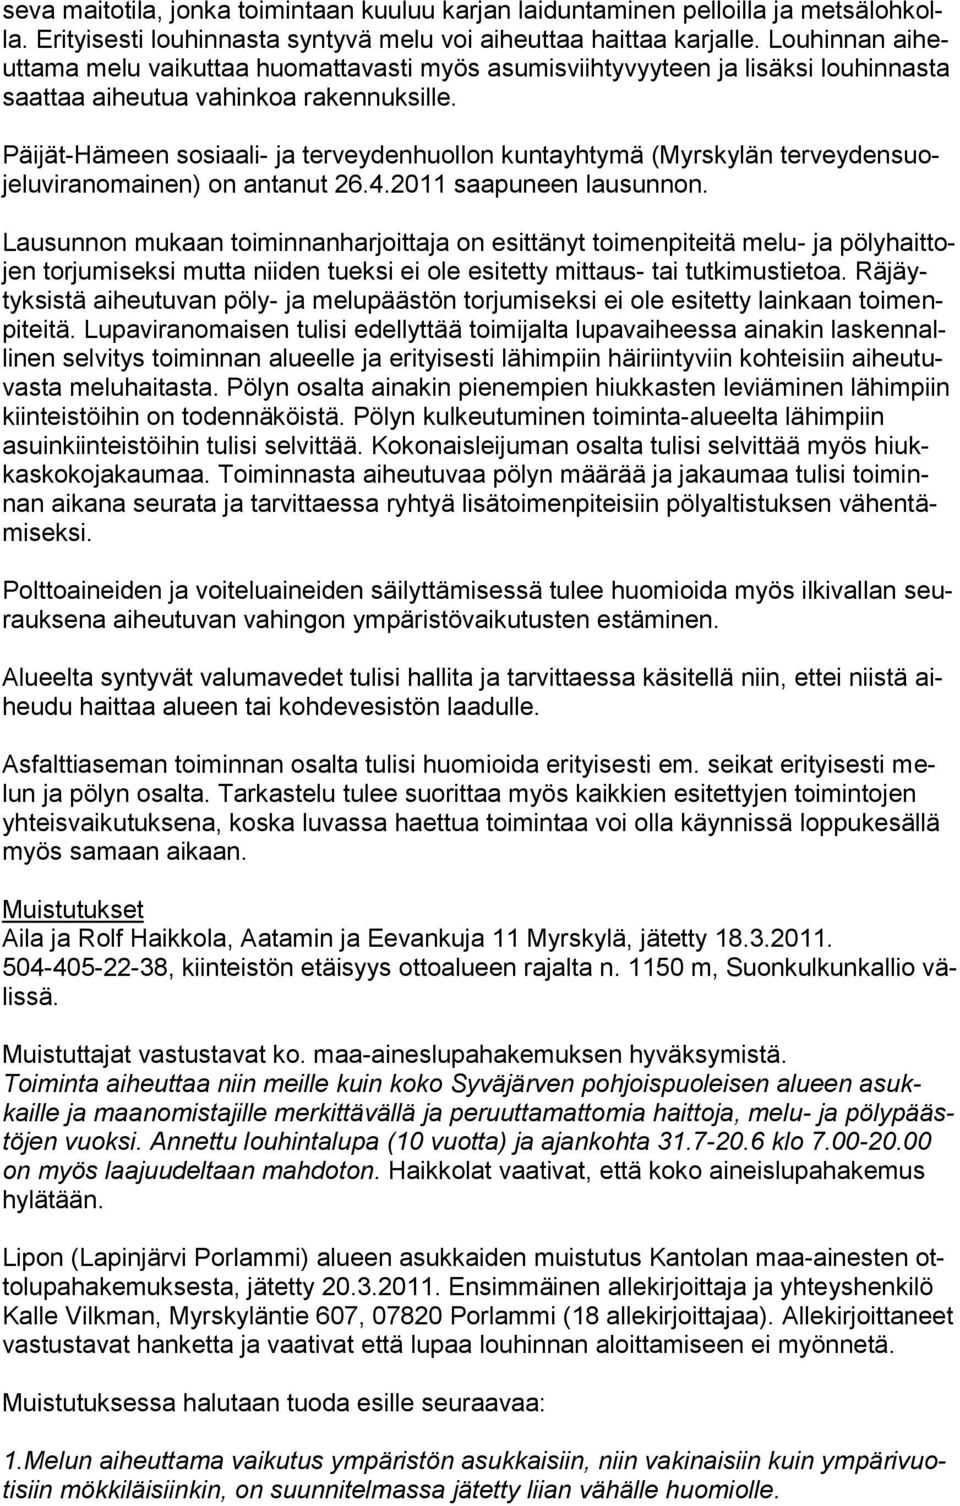 Päijät-Hämeen sosiaali- ja terveydenhuollon kuntayhtymä (Myrskylän terveydensuojeluviranomainen) on antanut 26.4.2011 saapuneen lausunnon.